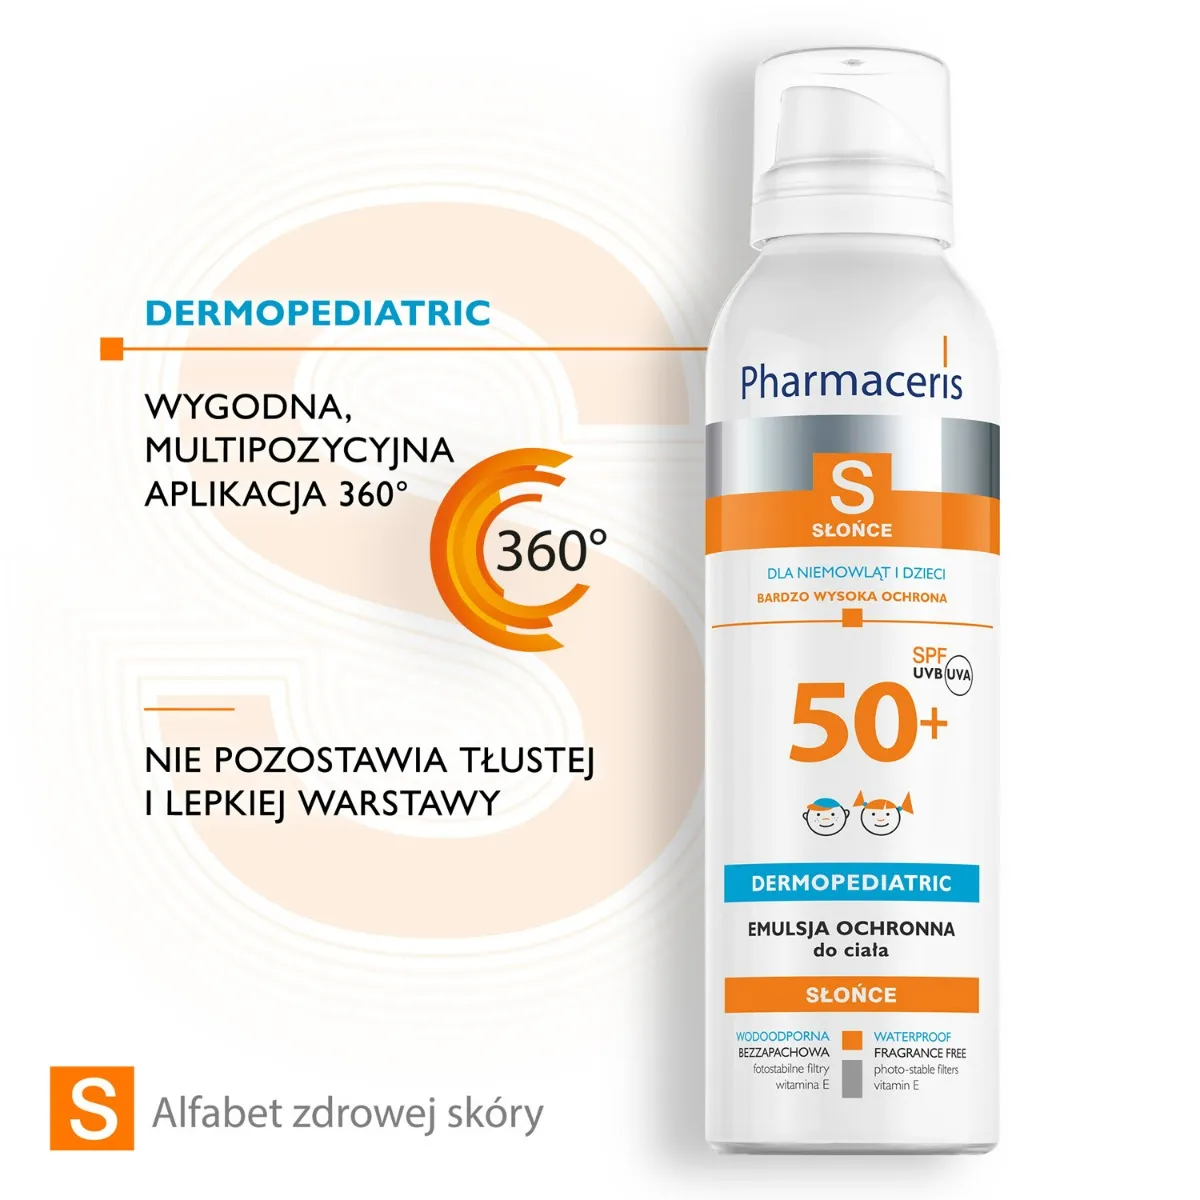 Pharmaceris S, emulsja ochronna dla niemowląt i dzieci, SPF50+, 150 ml 